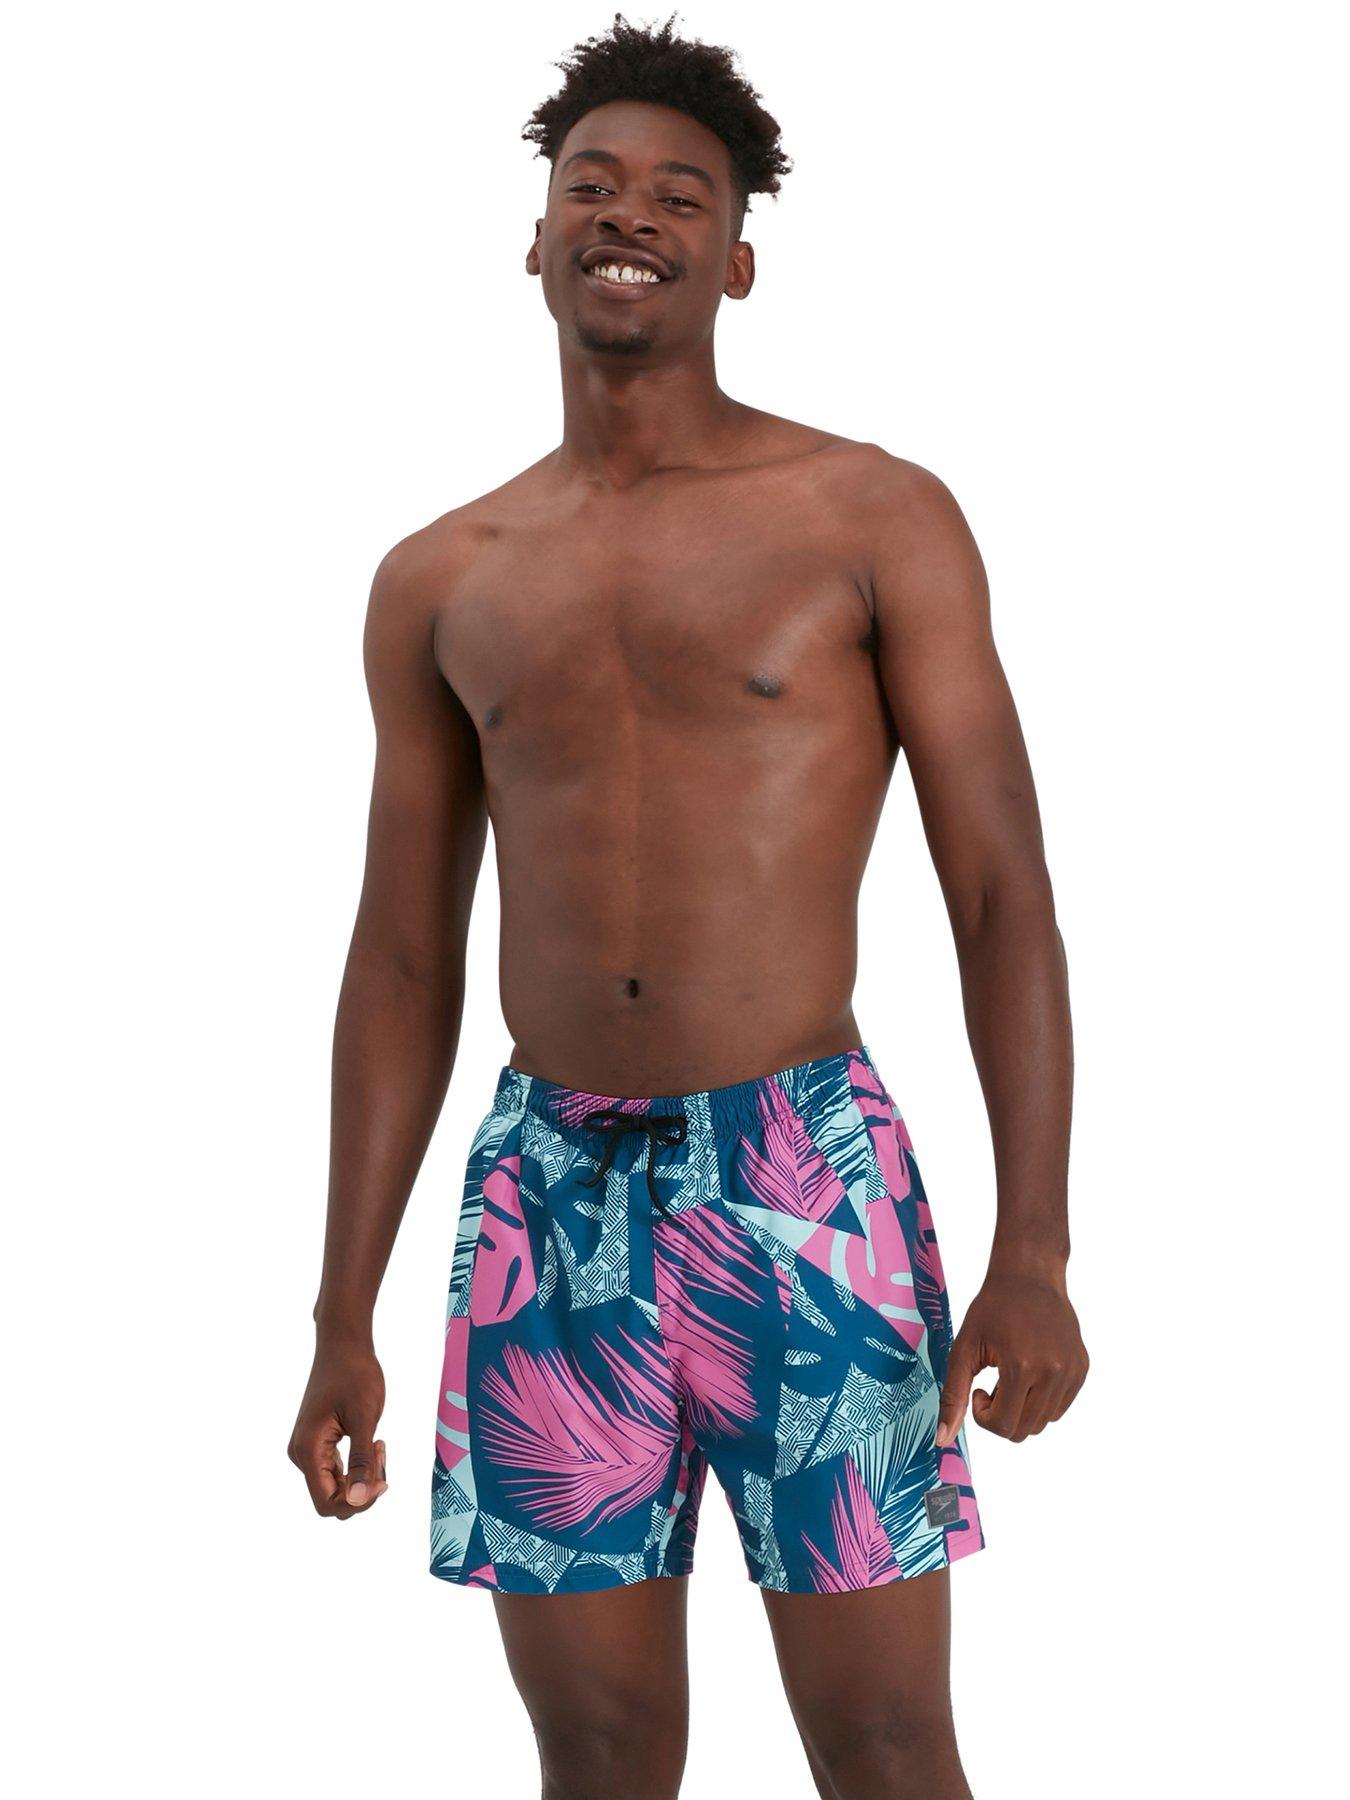 POTO Mens Swim Trunks Quick Dry Swimming Boxer Briefs Swimwear Pants Surfing Running Swimming Watershort 